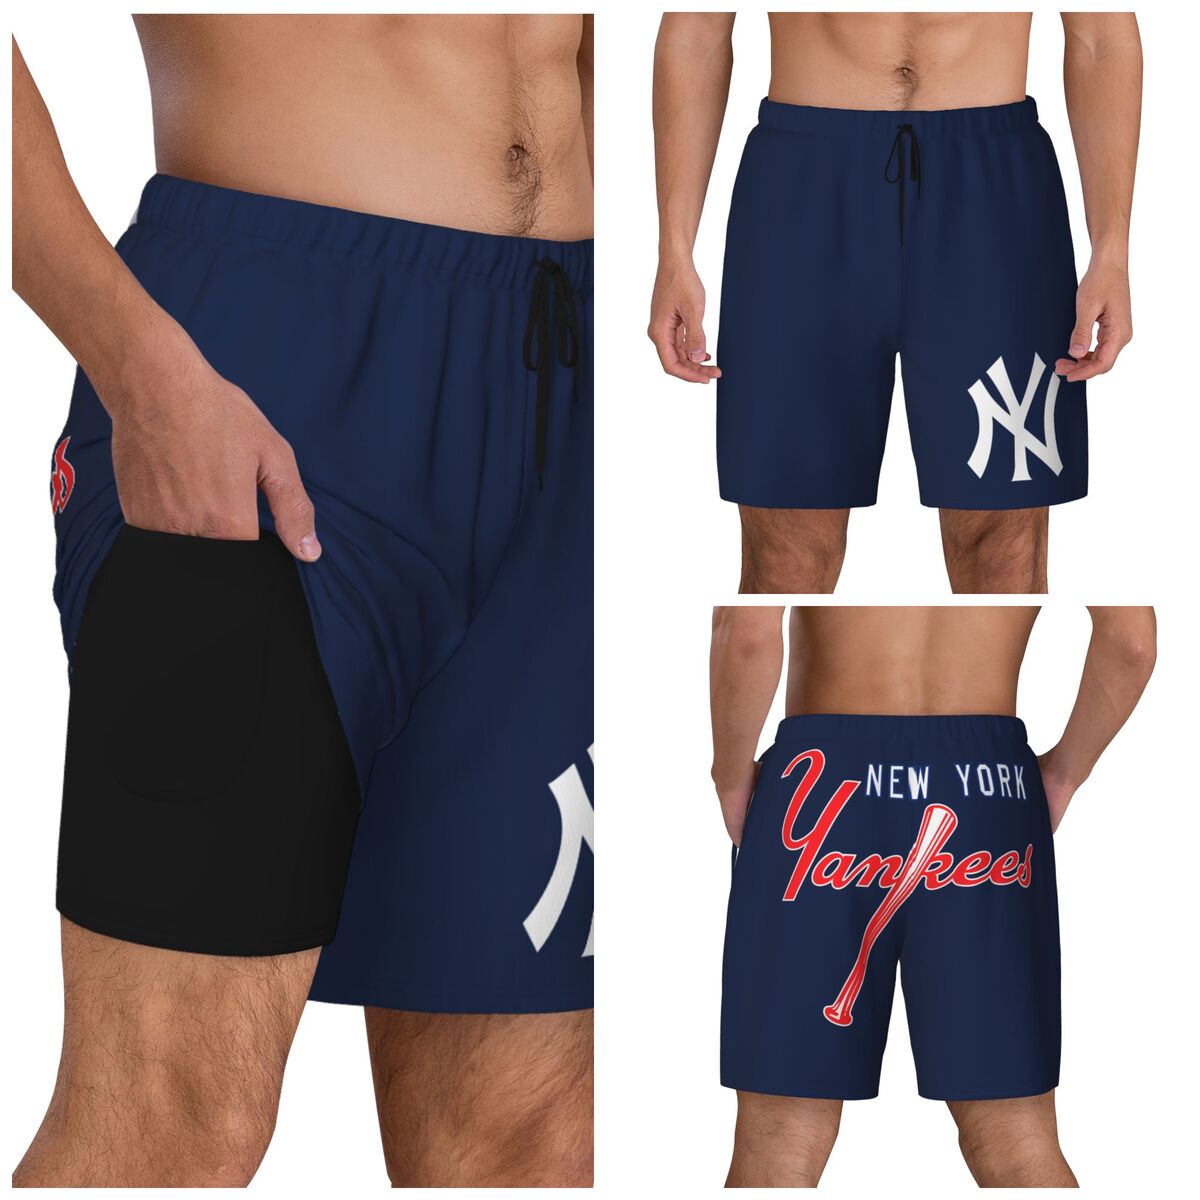 New York Yankees Swim Trunks Men